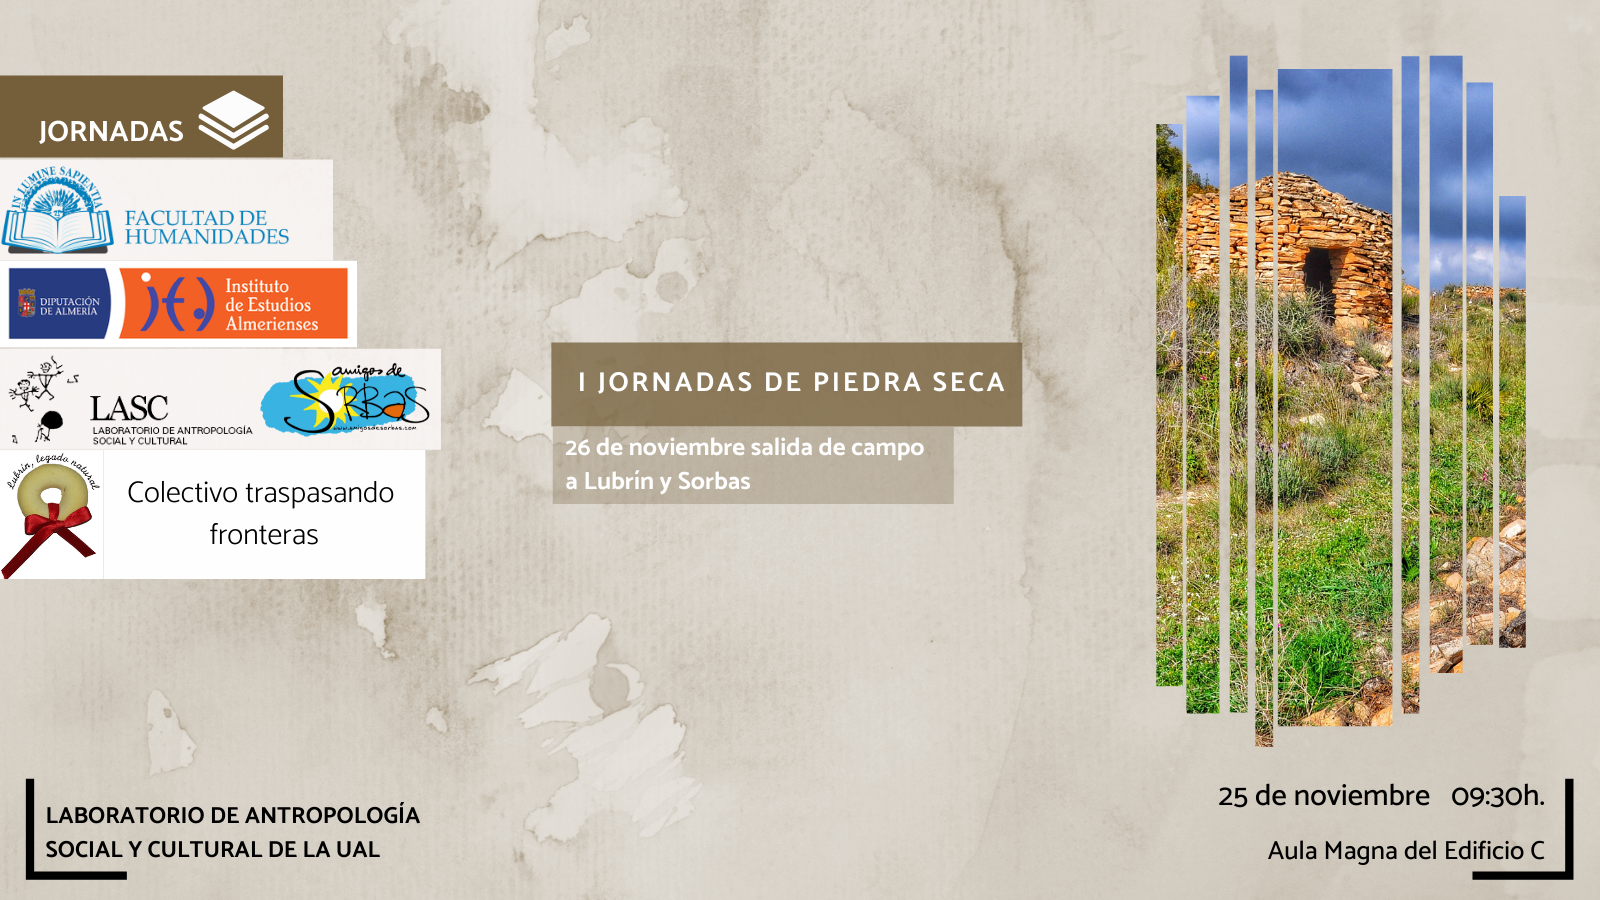 La Facultad de Humanidades y Laboratorio de Antropología Social y Cultural de la Universidad de Almería organizan la actividad titulada "I JORNADAS DE PIEDRA SECA‘’.